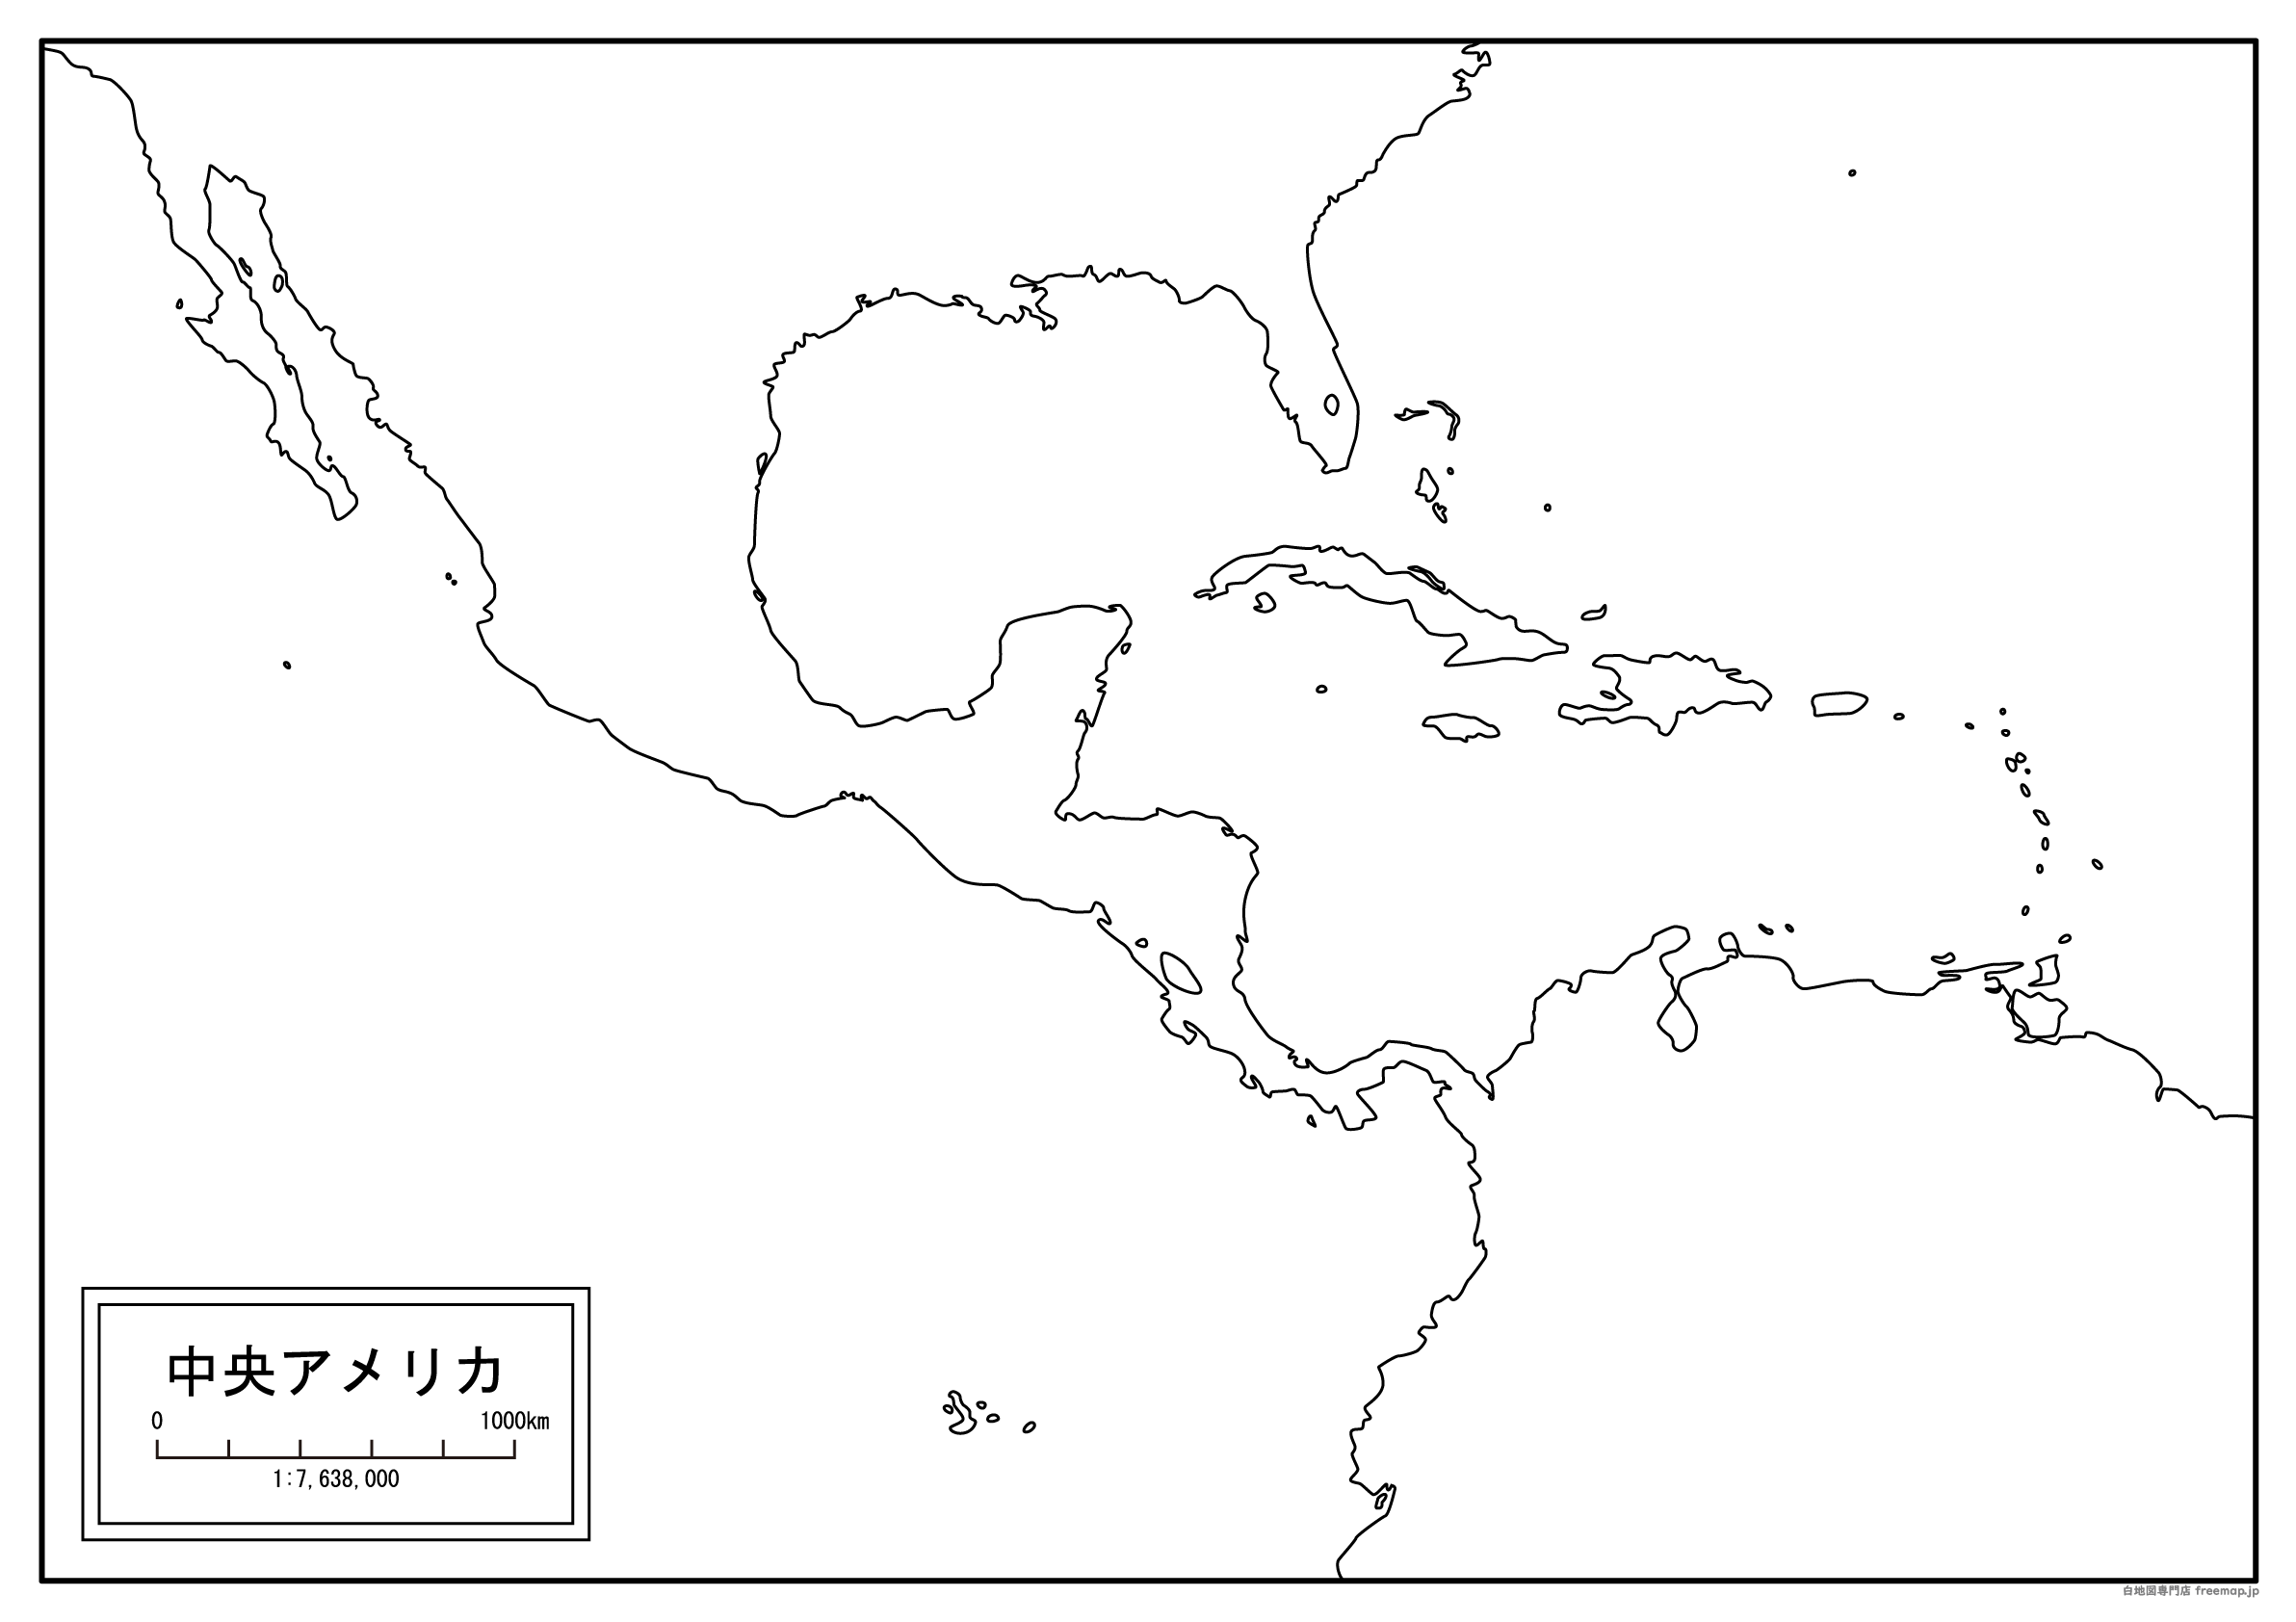 中央アメリカ地域全図のサムネイル